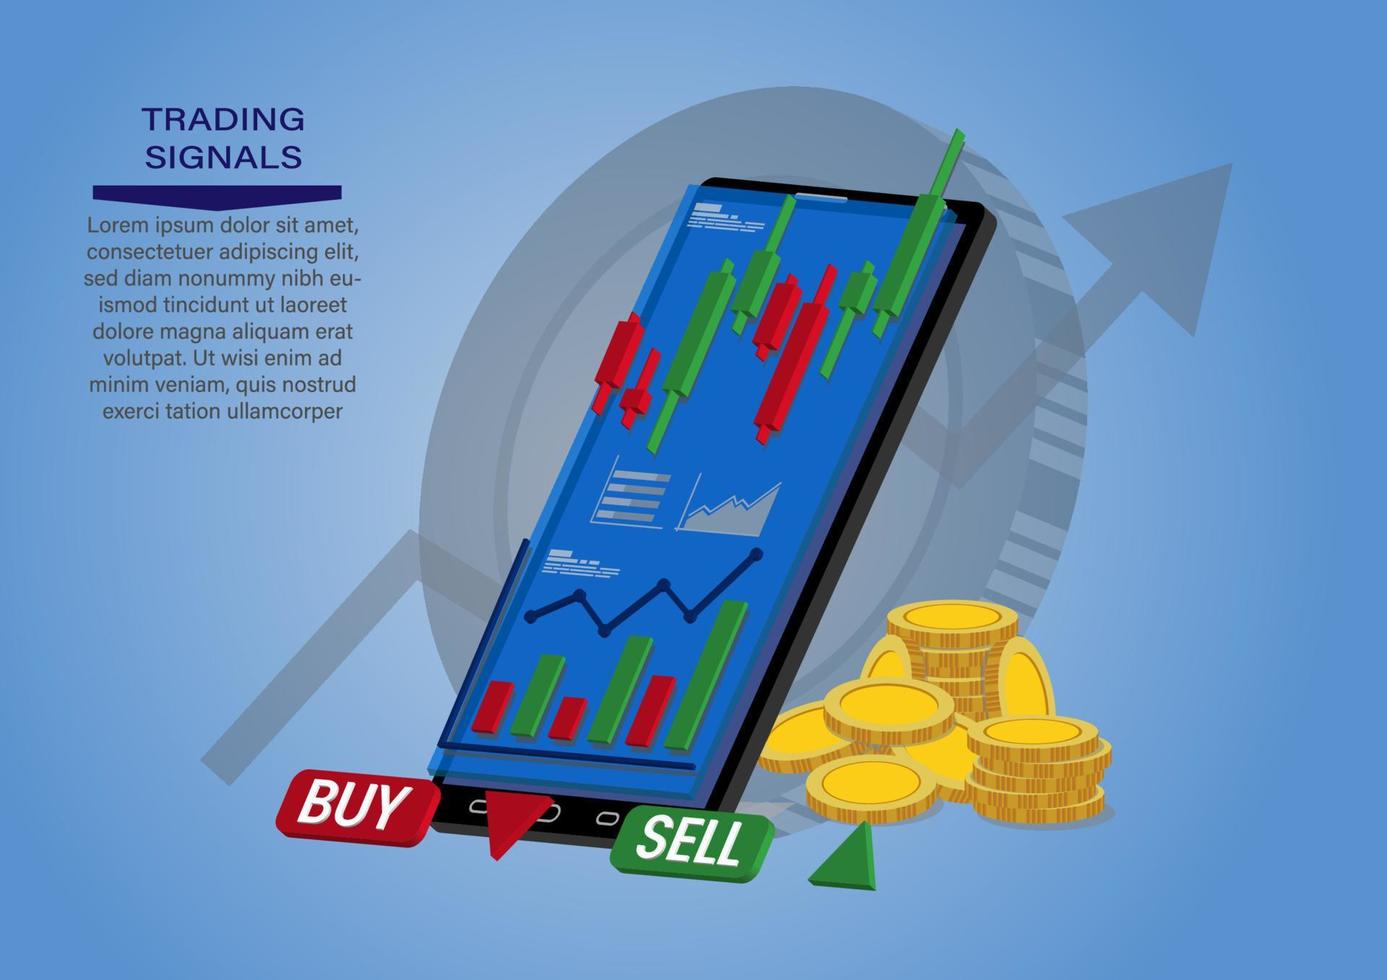 graphique en chandeliers de la vente et de l'achat d'actions à l'aide de téléphones mobiles, négociation d'investissements sur le marché, illustration vectorielle vecteur